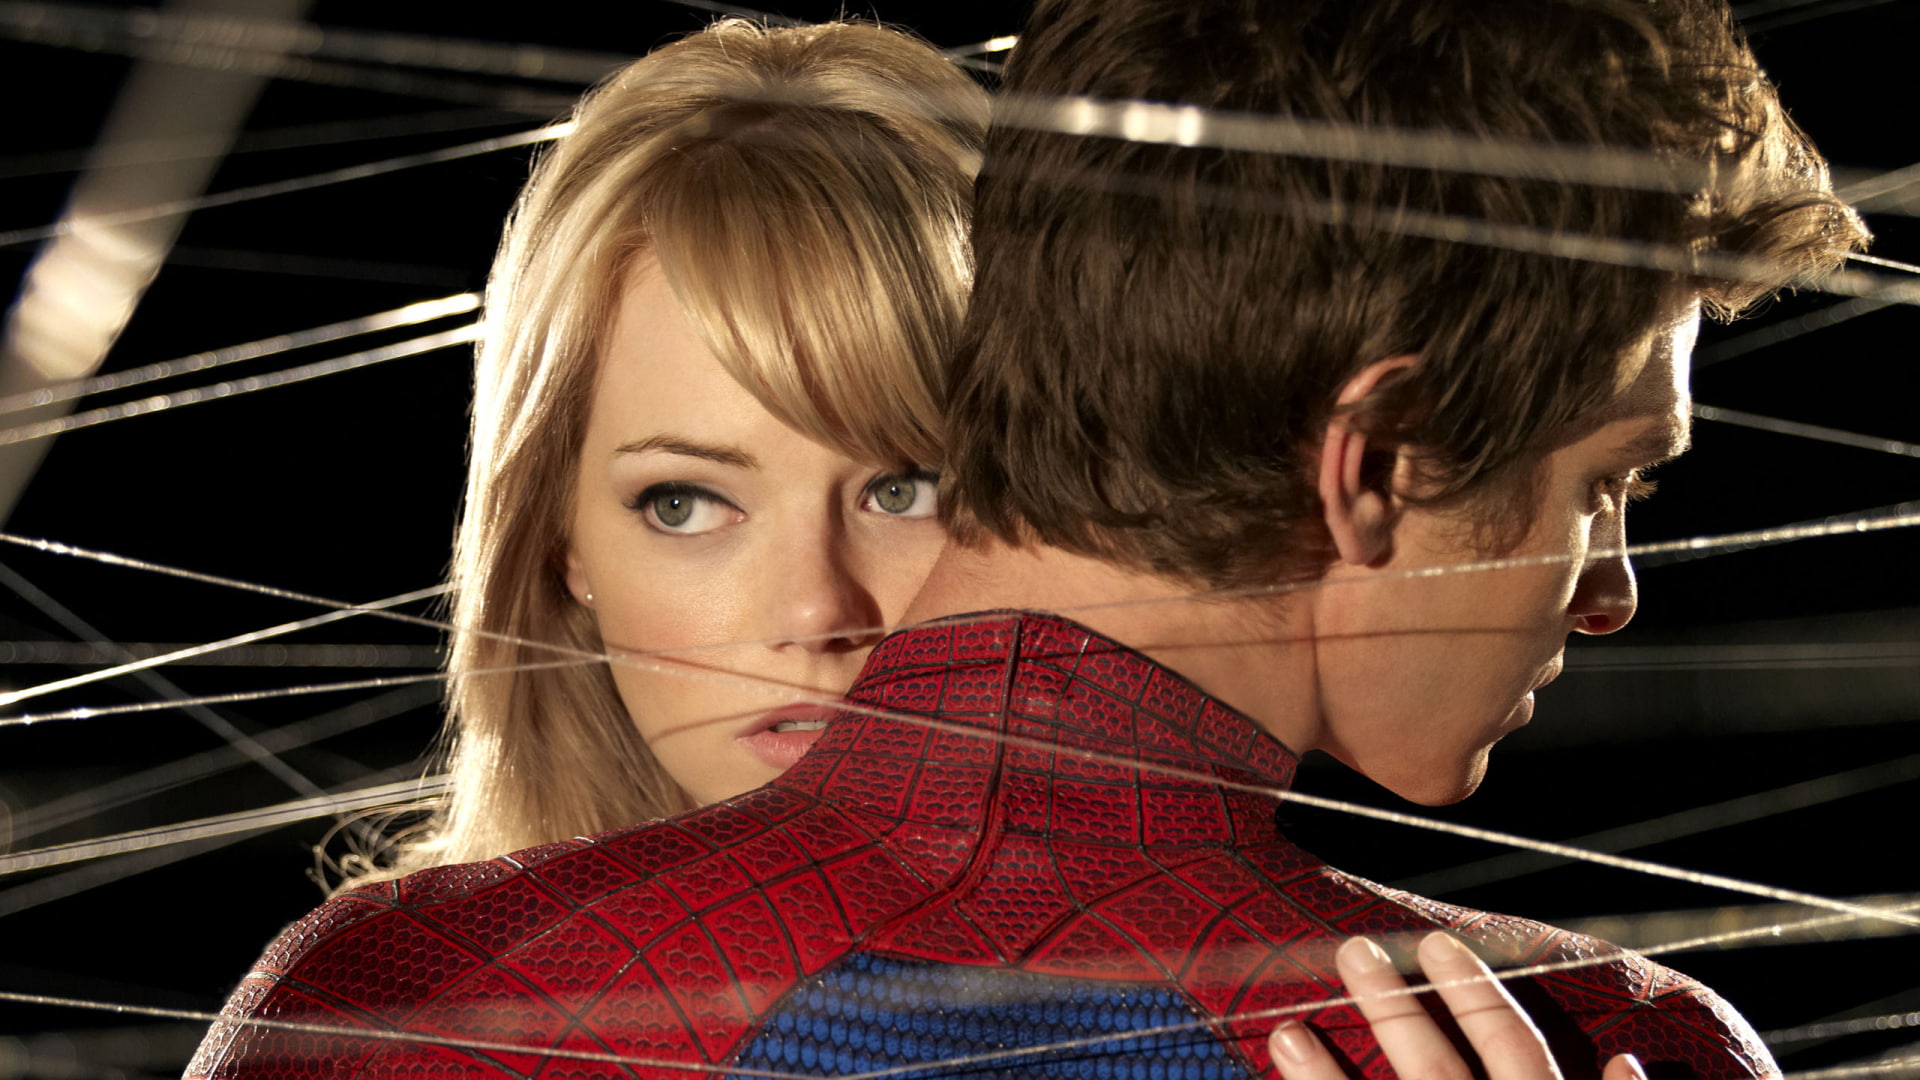 Spider-Man, The Amazing Spider-Man, Andrew Garfield, Emma Stone